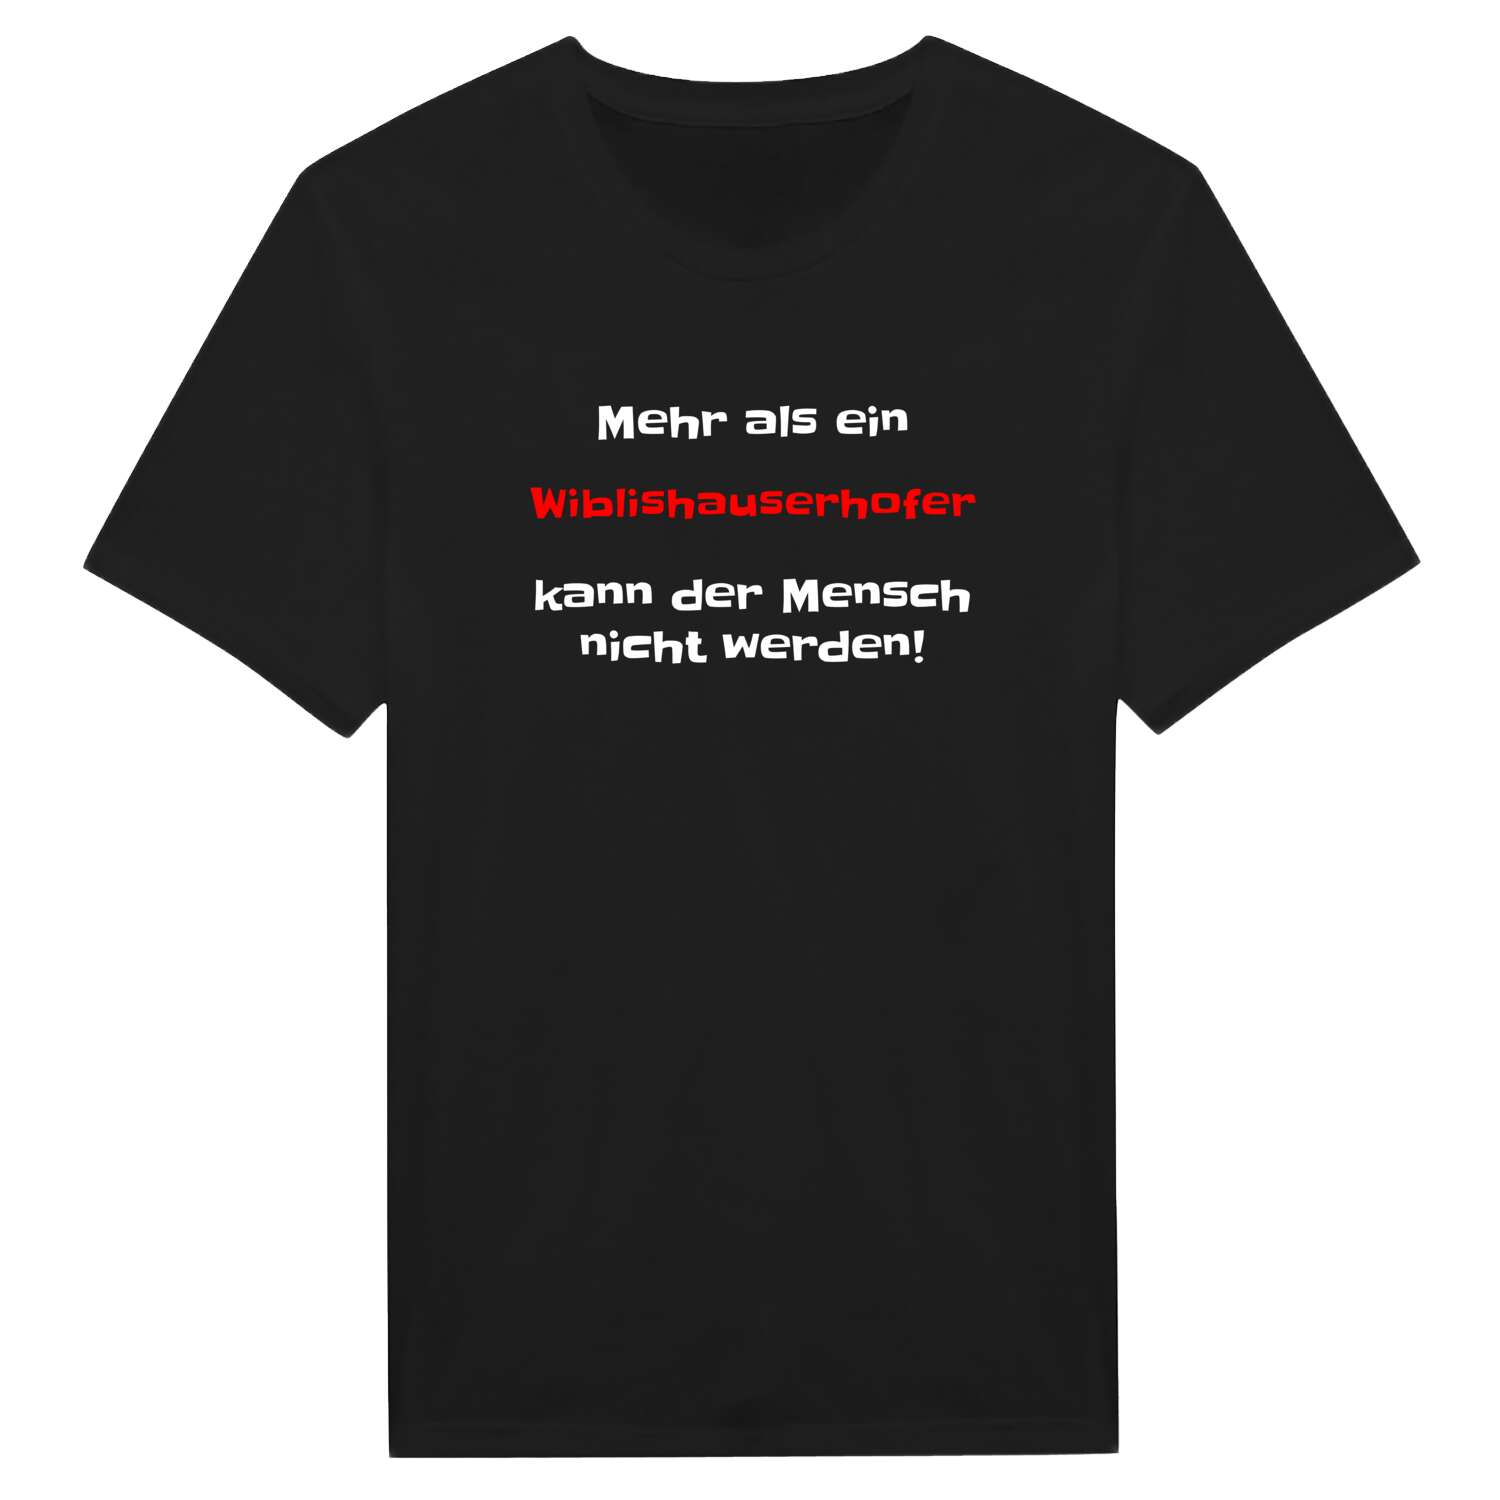 Wiblishauserhof T-Shirt »Mehr als ein«